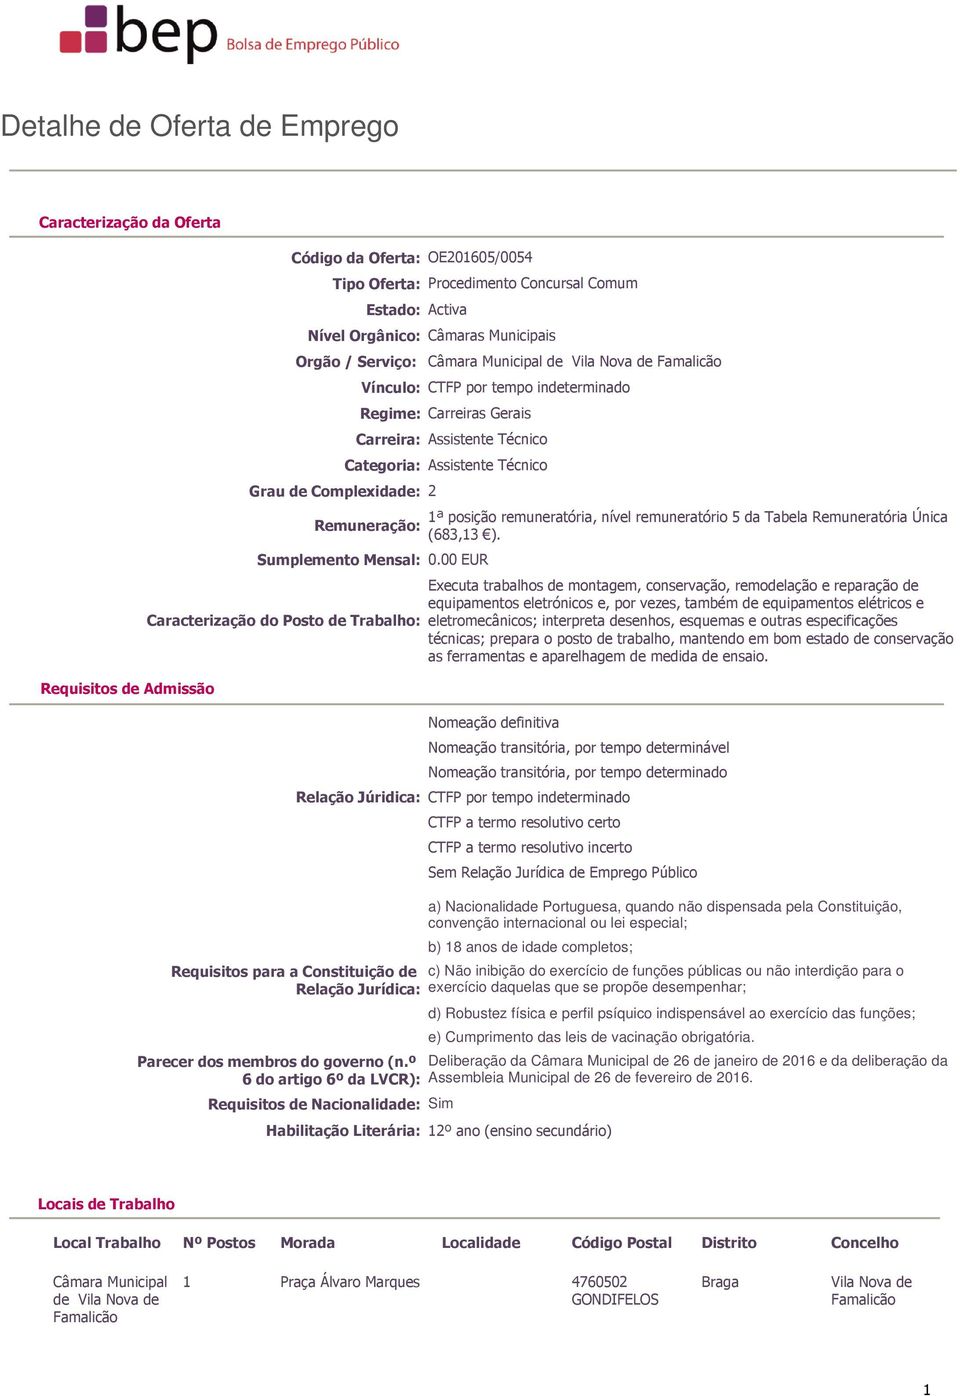 Assistente Técnico Remuneração: Sumplemento Mensal: 0.00 EUR Caracterização do Posto de Trabalho: 1ª posição remuneratória, nível remuneratório 5 da Tabela Remuneratória Única (683,13 ).